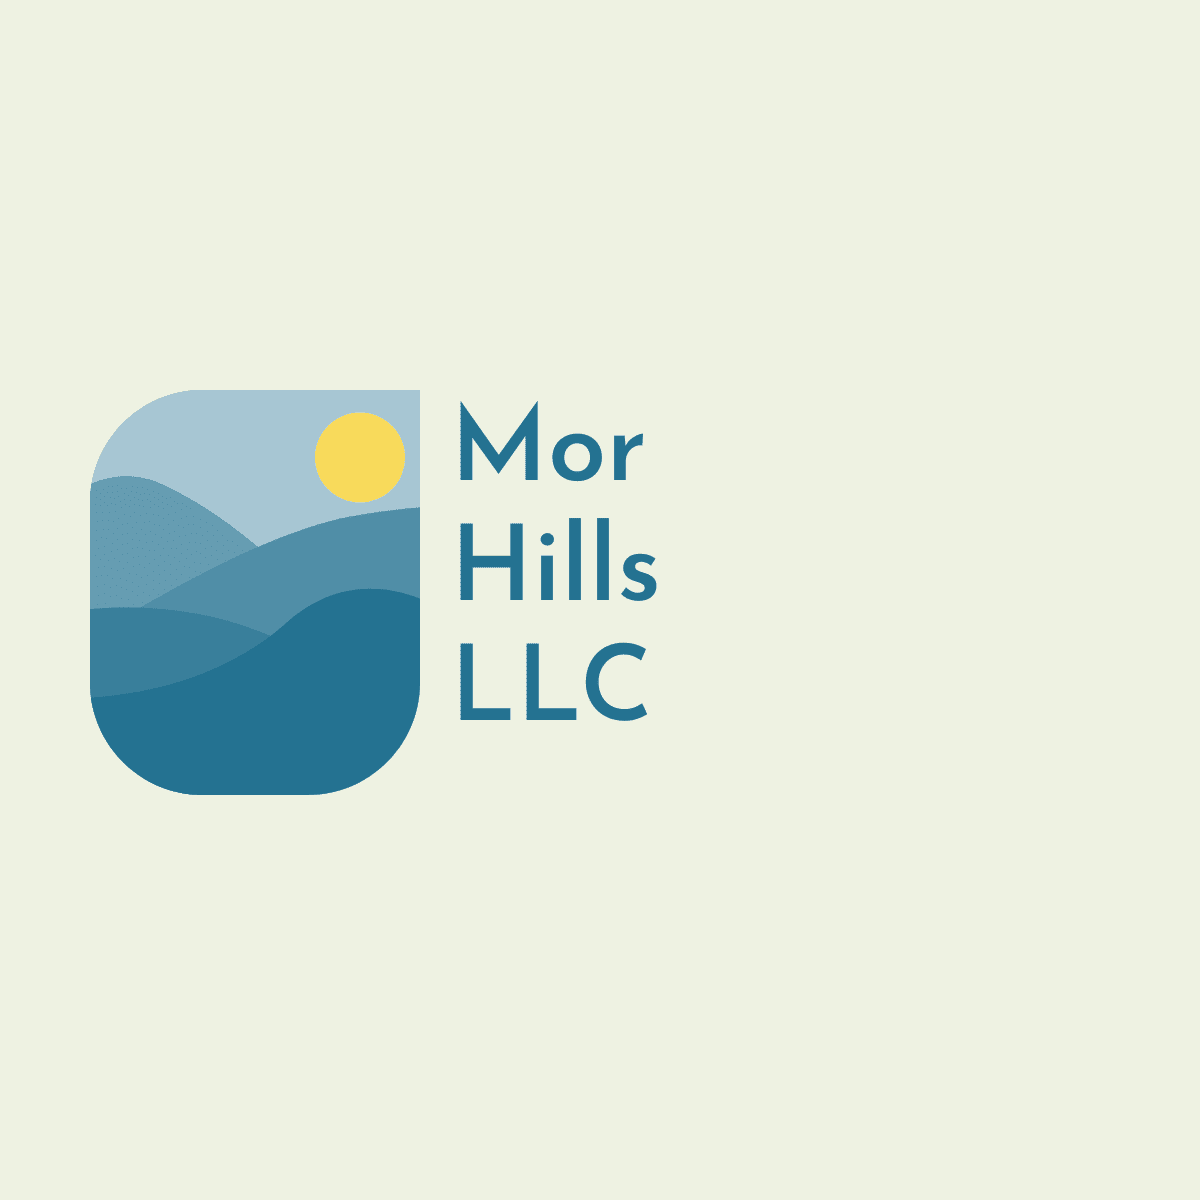 Mor Hills LLC